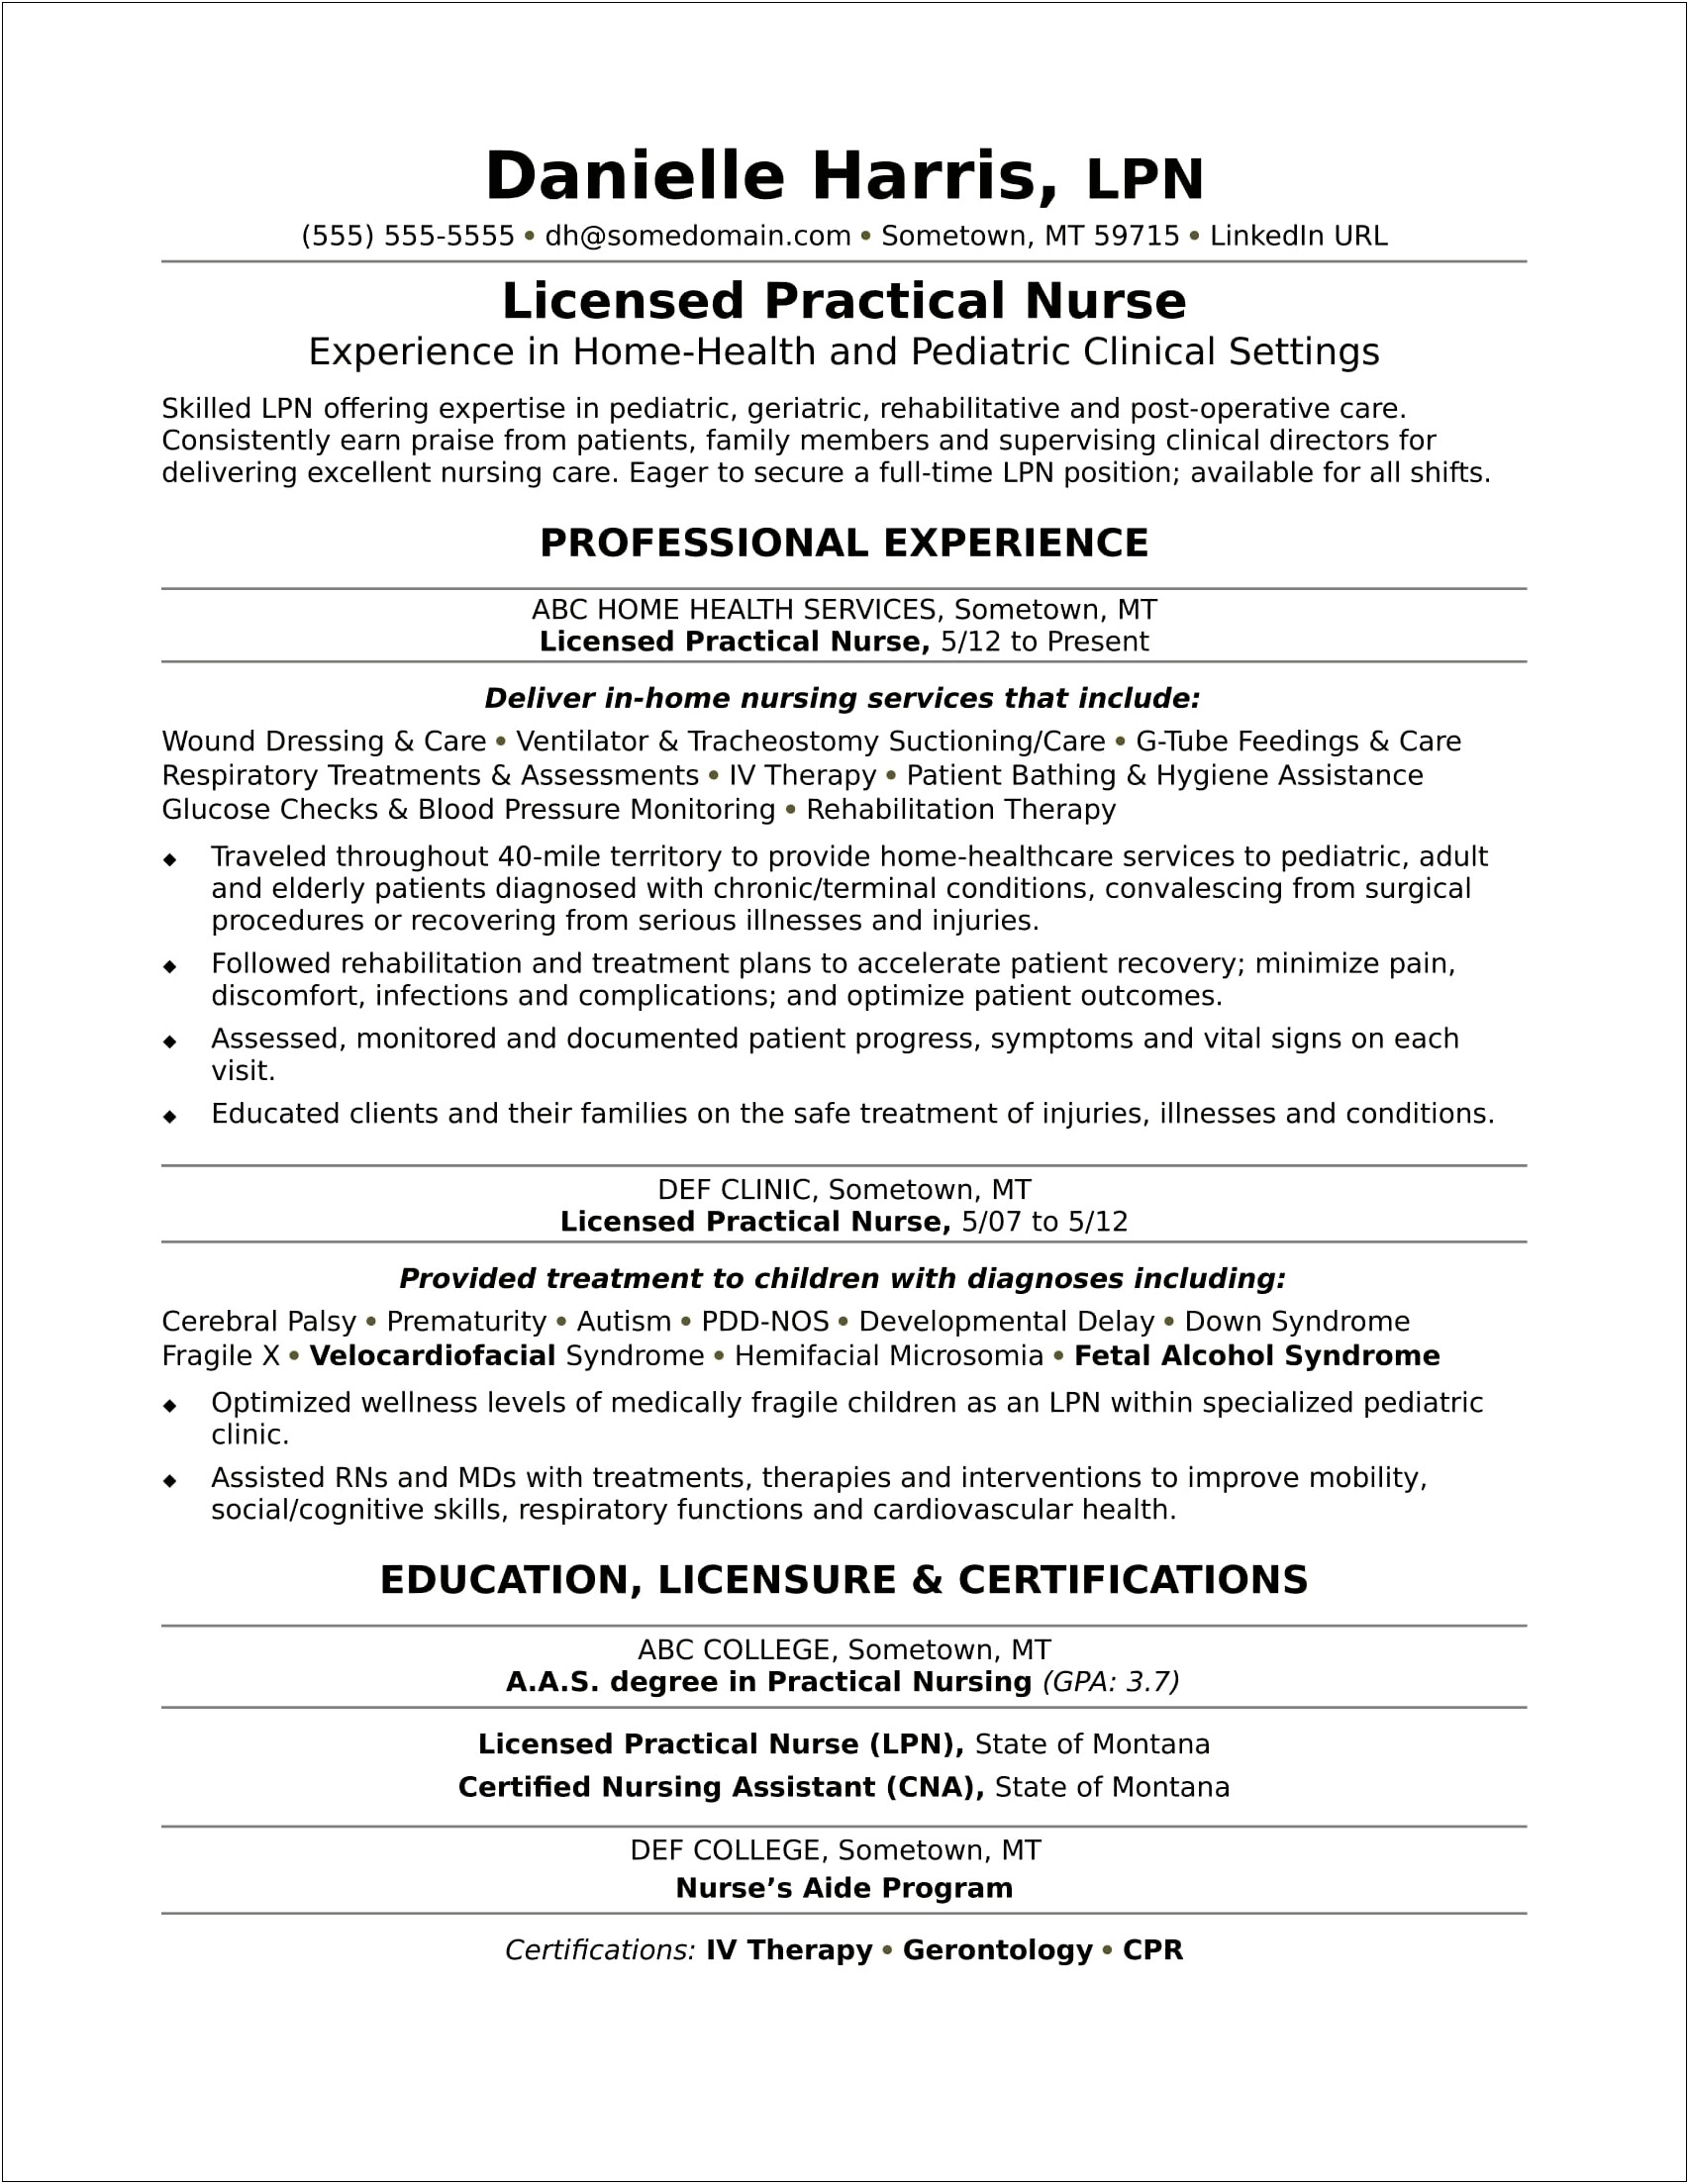 Sample Resume No Experience Nurse